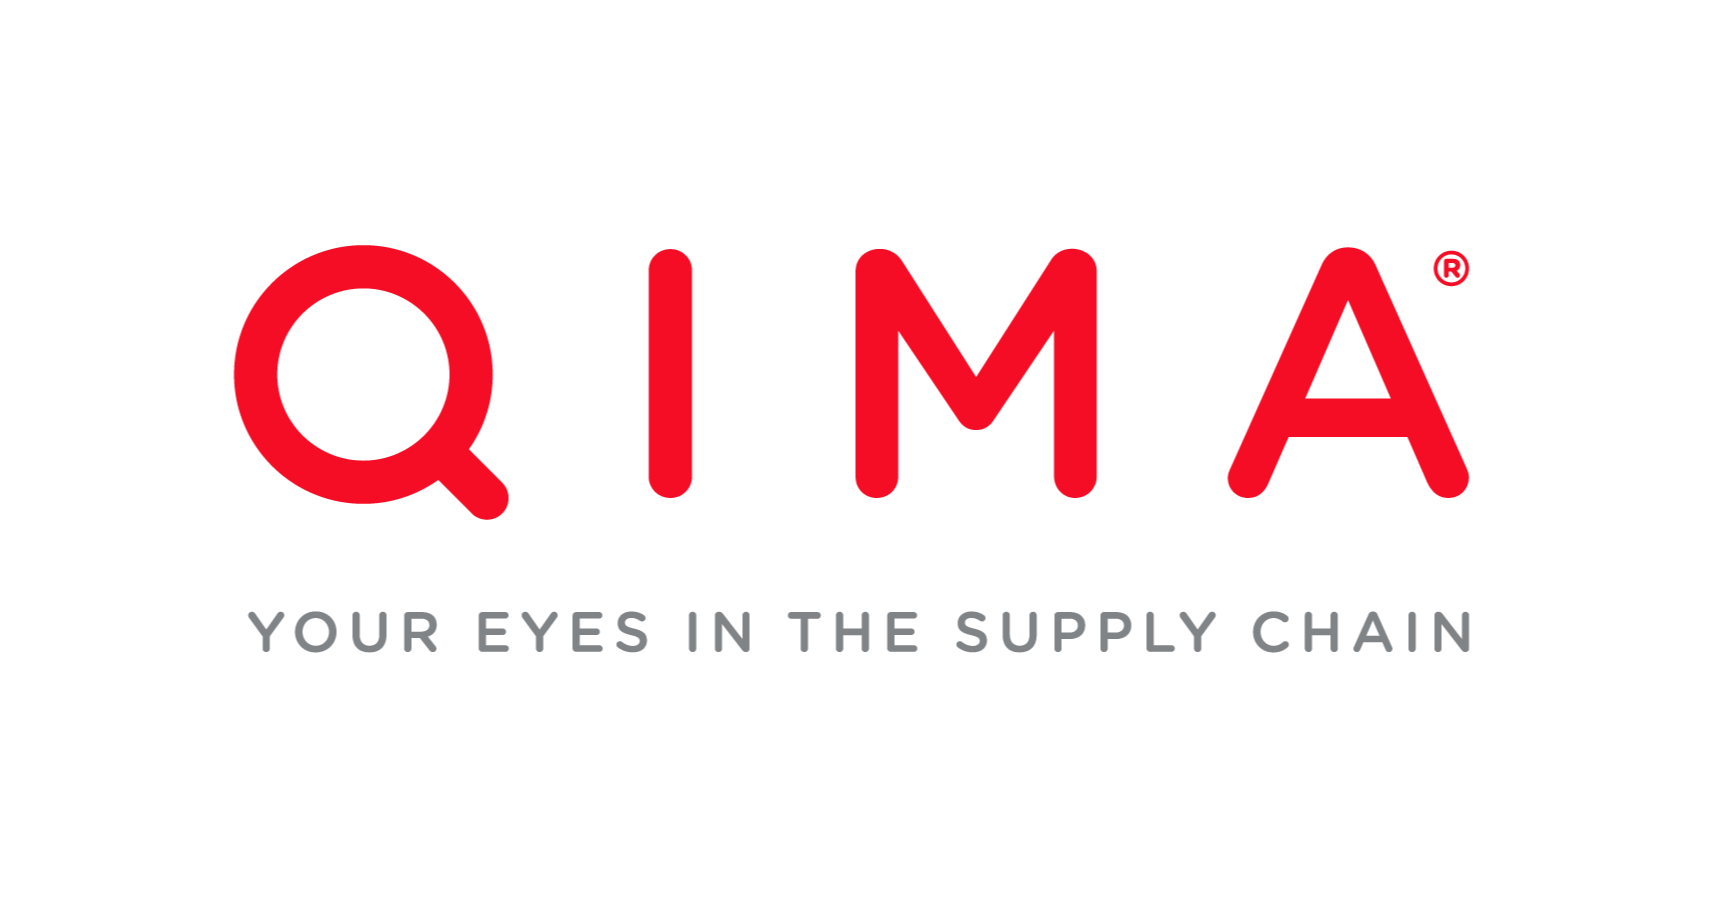 Qima